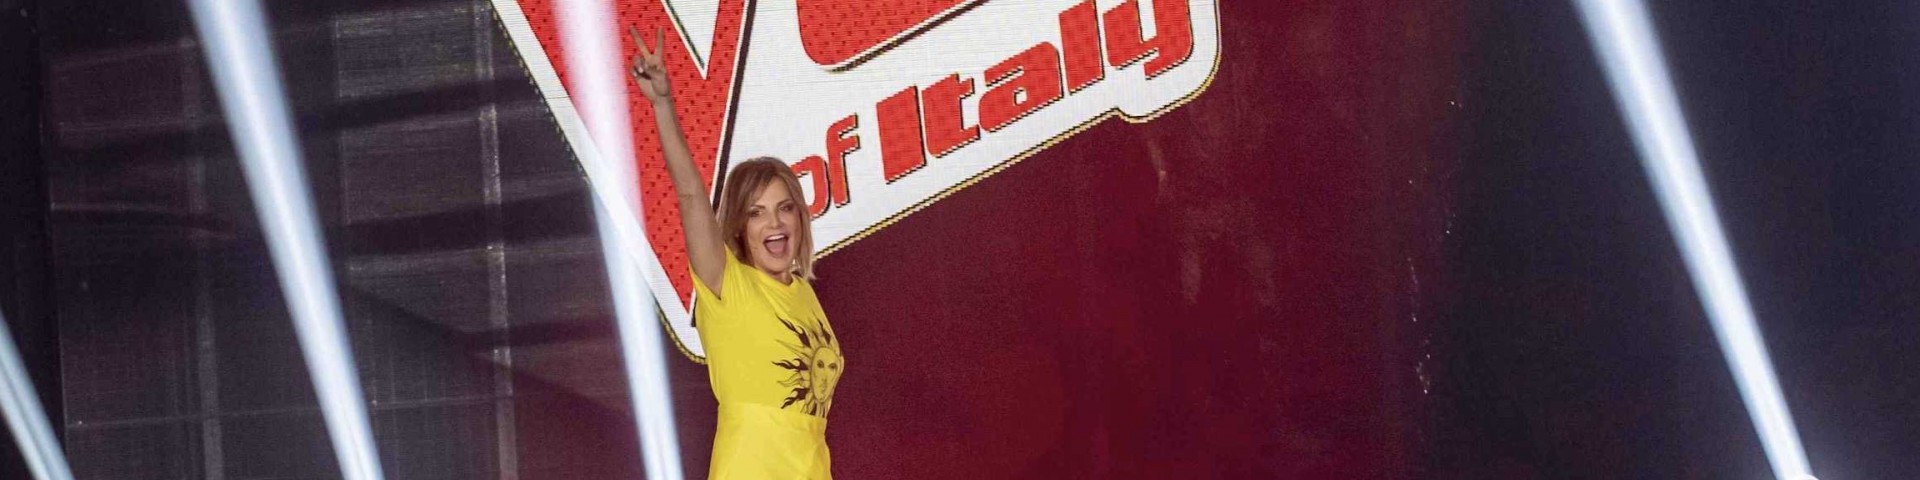 The Voice of Italy 6: leggerezza, divertimento e tanta musica nella prima puntata